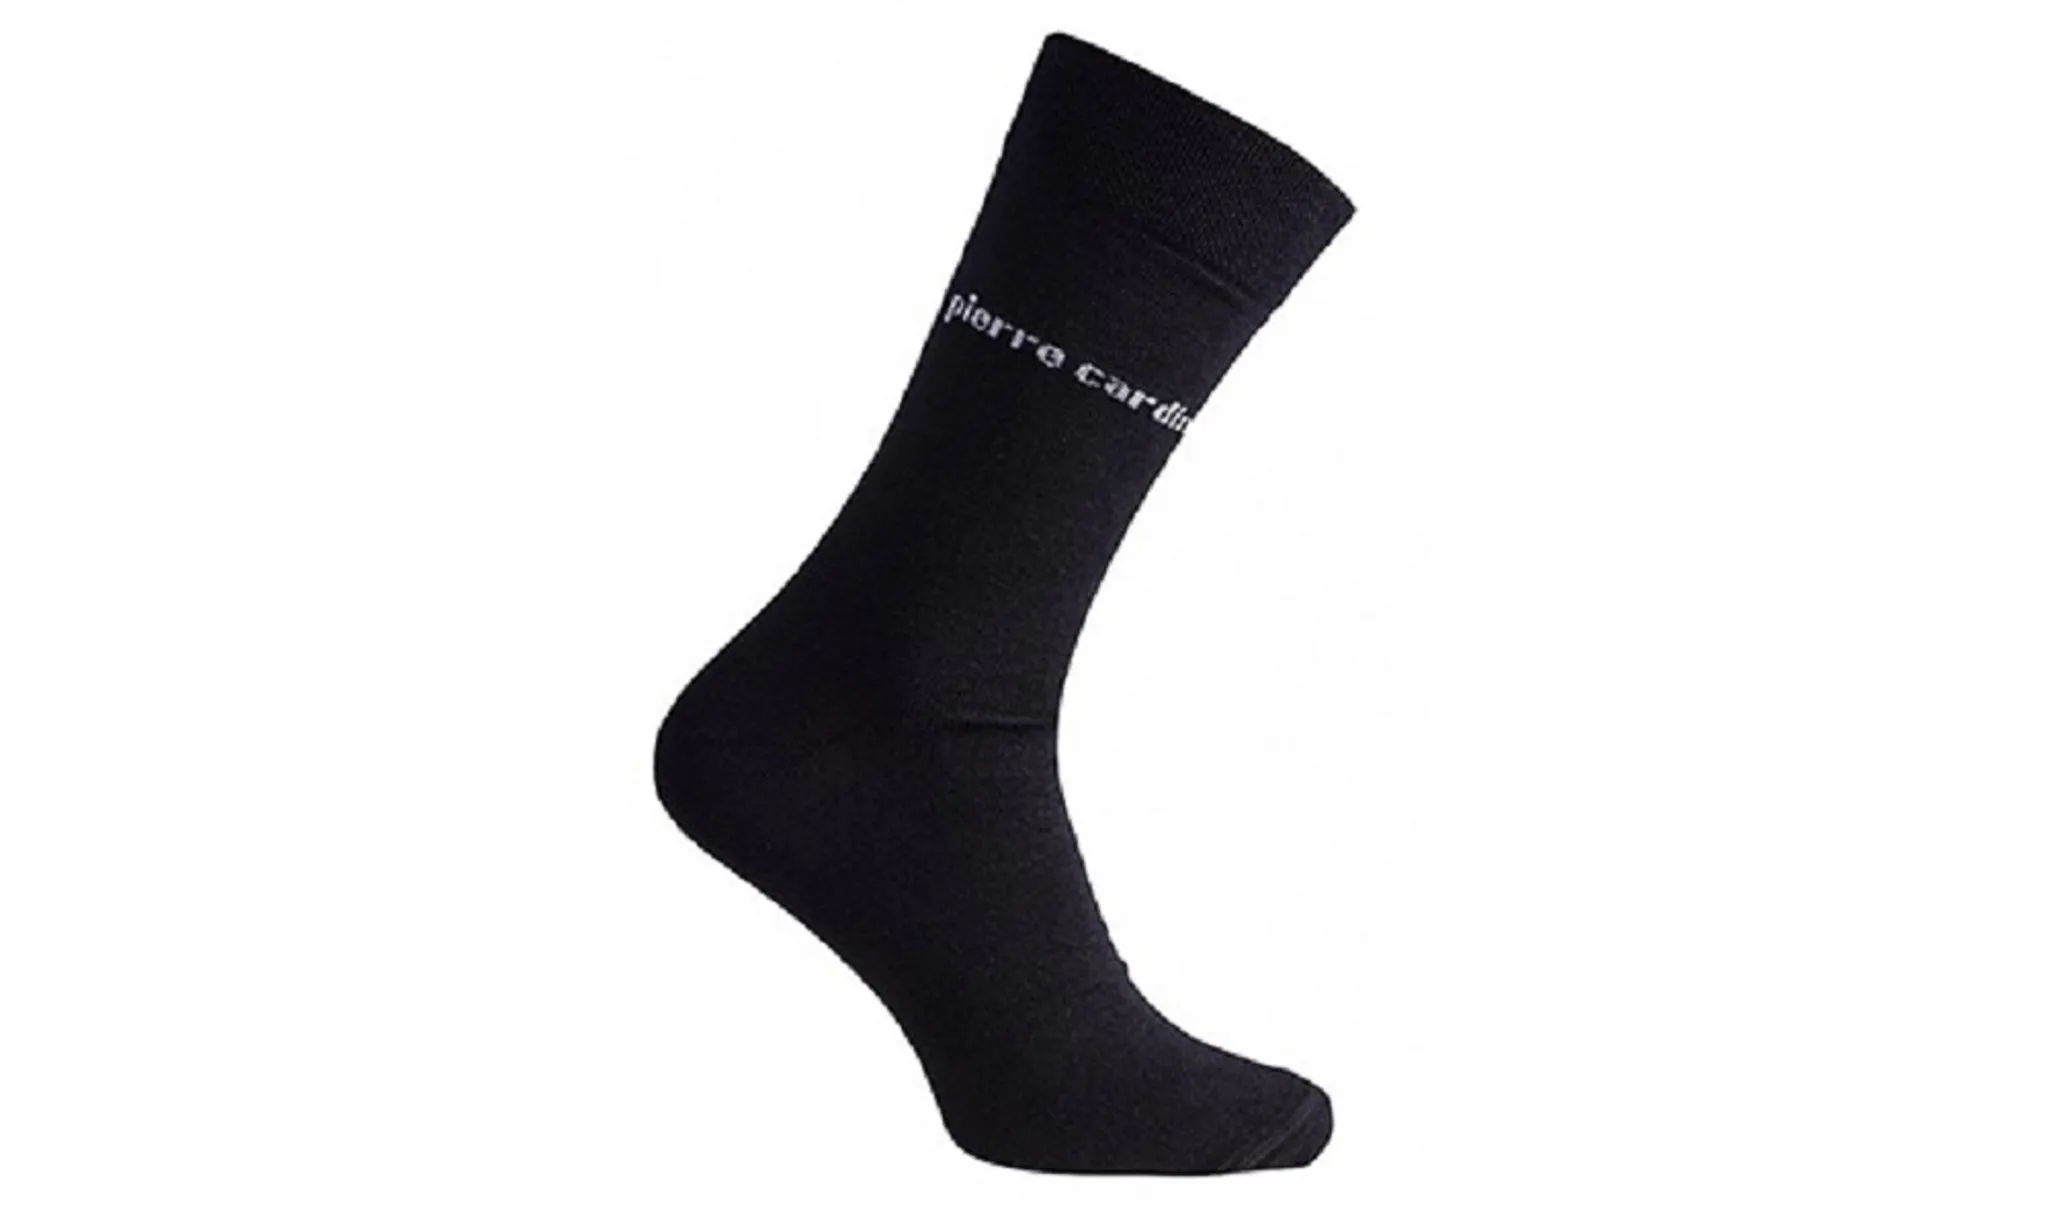 Pierre Cardin Business-Socken 3 Paar 43 - 46